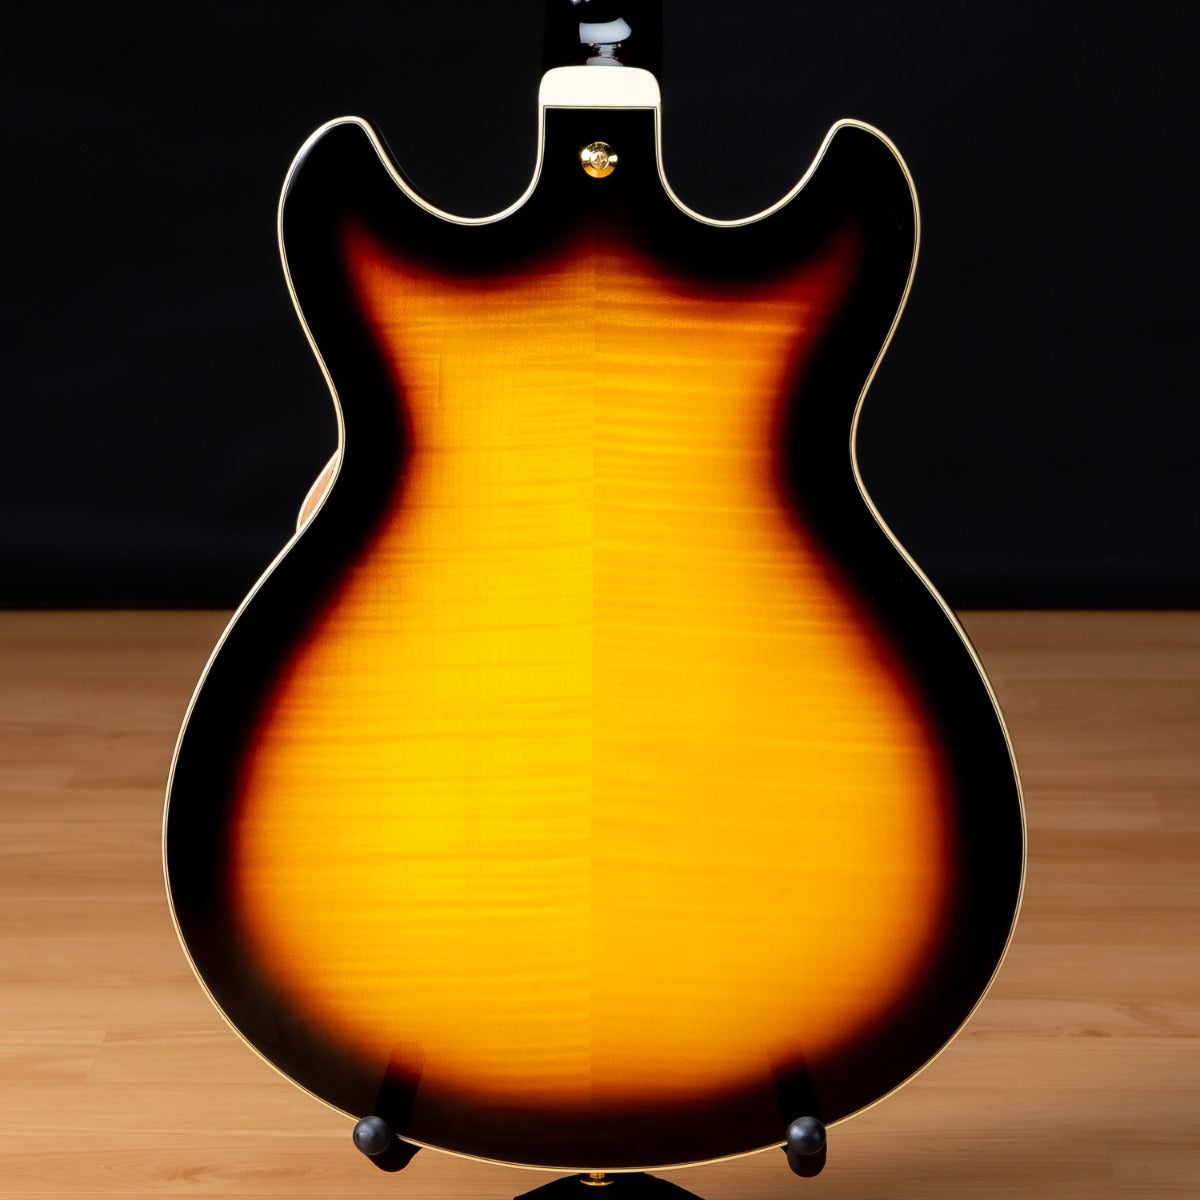 Ibanez AS93FM Artcore Expressionist Electric Guitar - Antique Yellow Sunburst  view 3